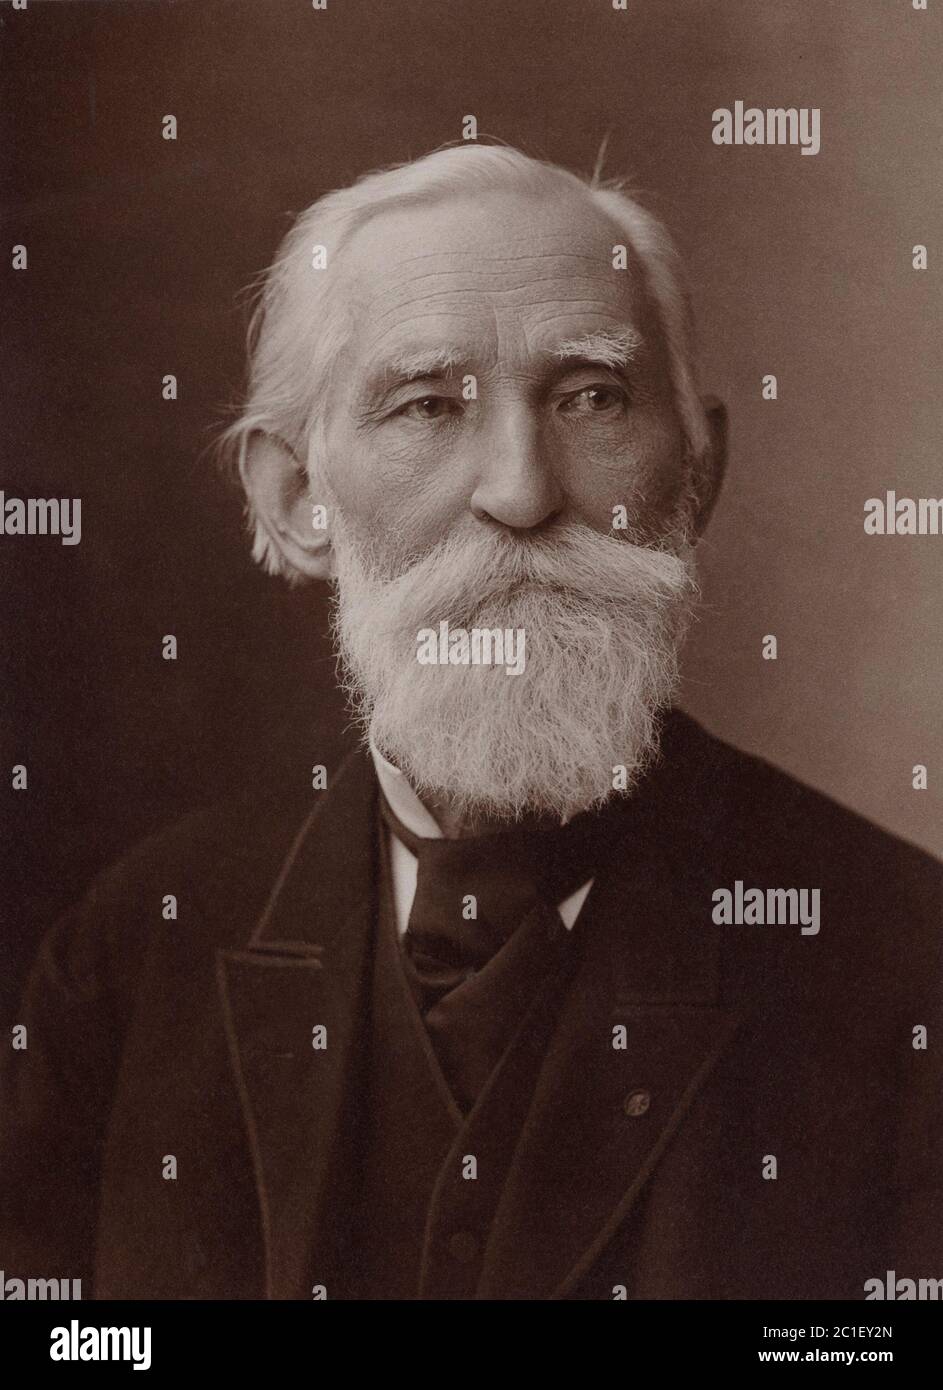 Pafnuty Lvovich Chebyshev (1821 – 1894) était un mathématicien russe célèbre. Son nom peut être translittéré par Chebysheff, Chebychov, Che Banque D'Images